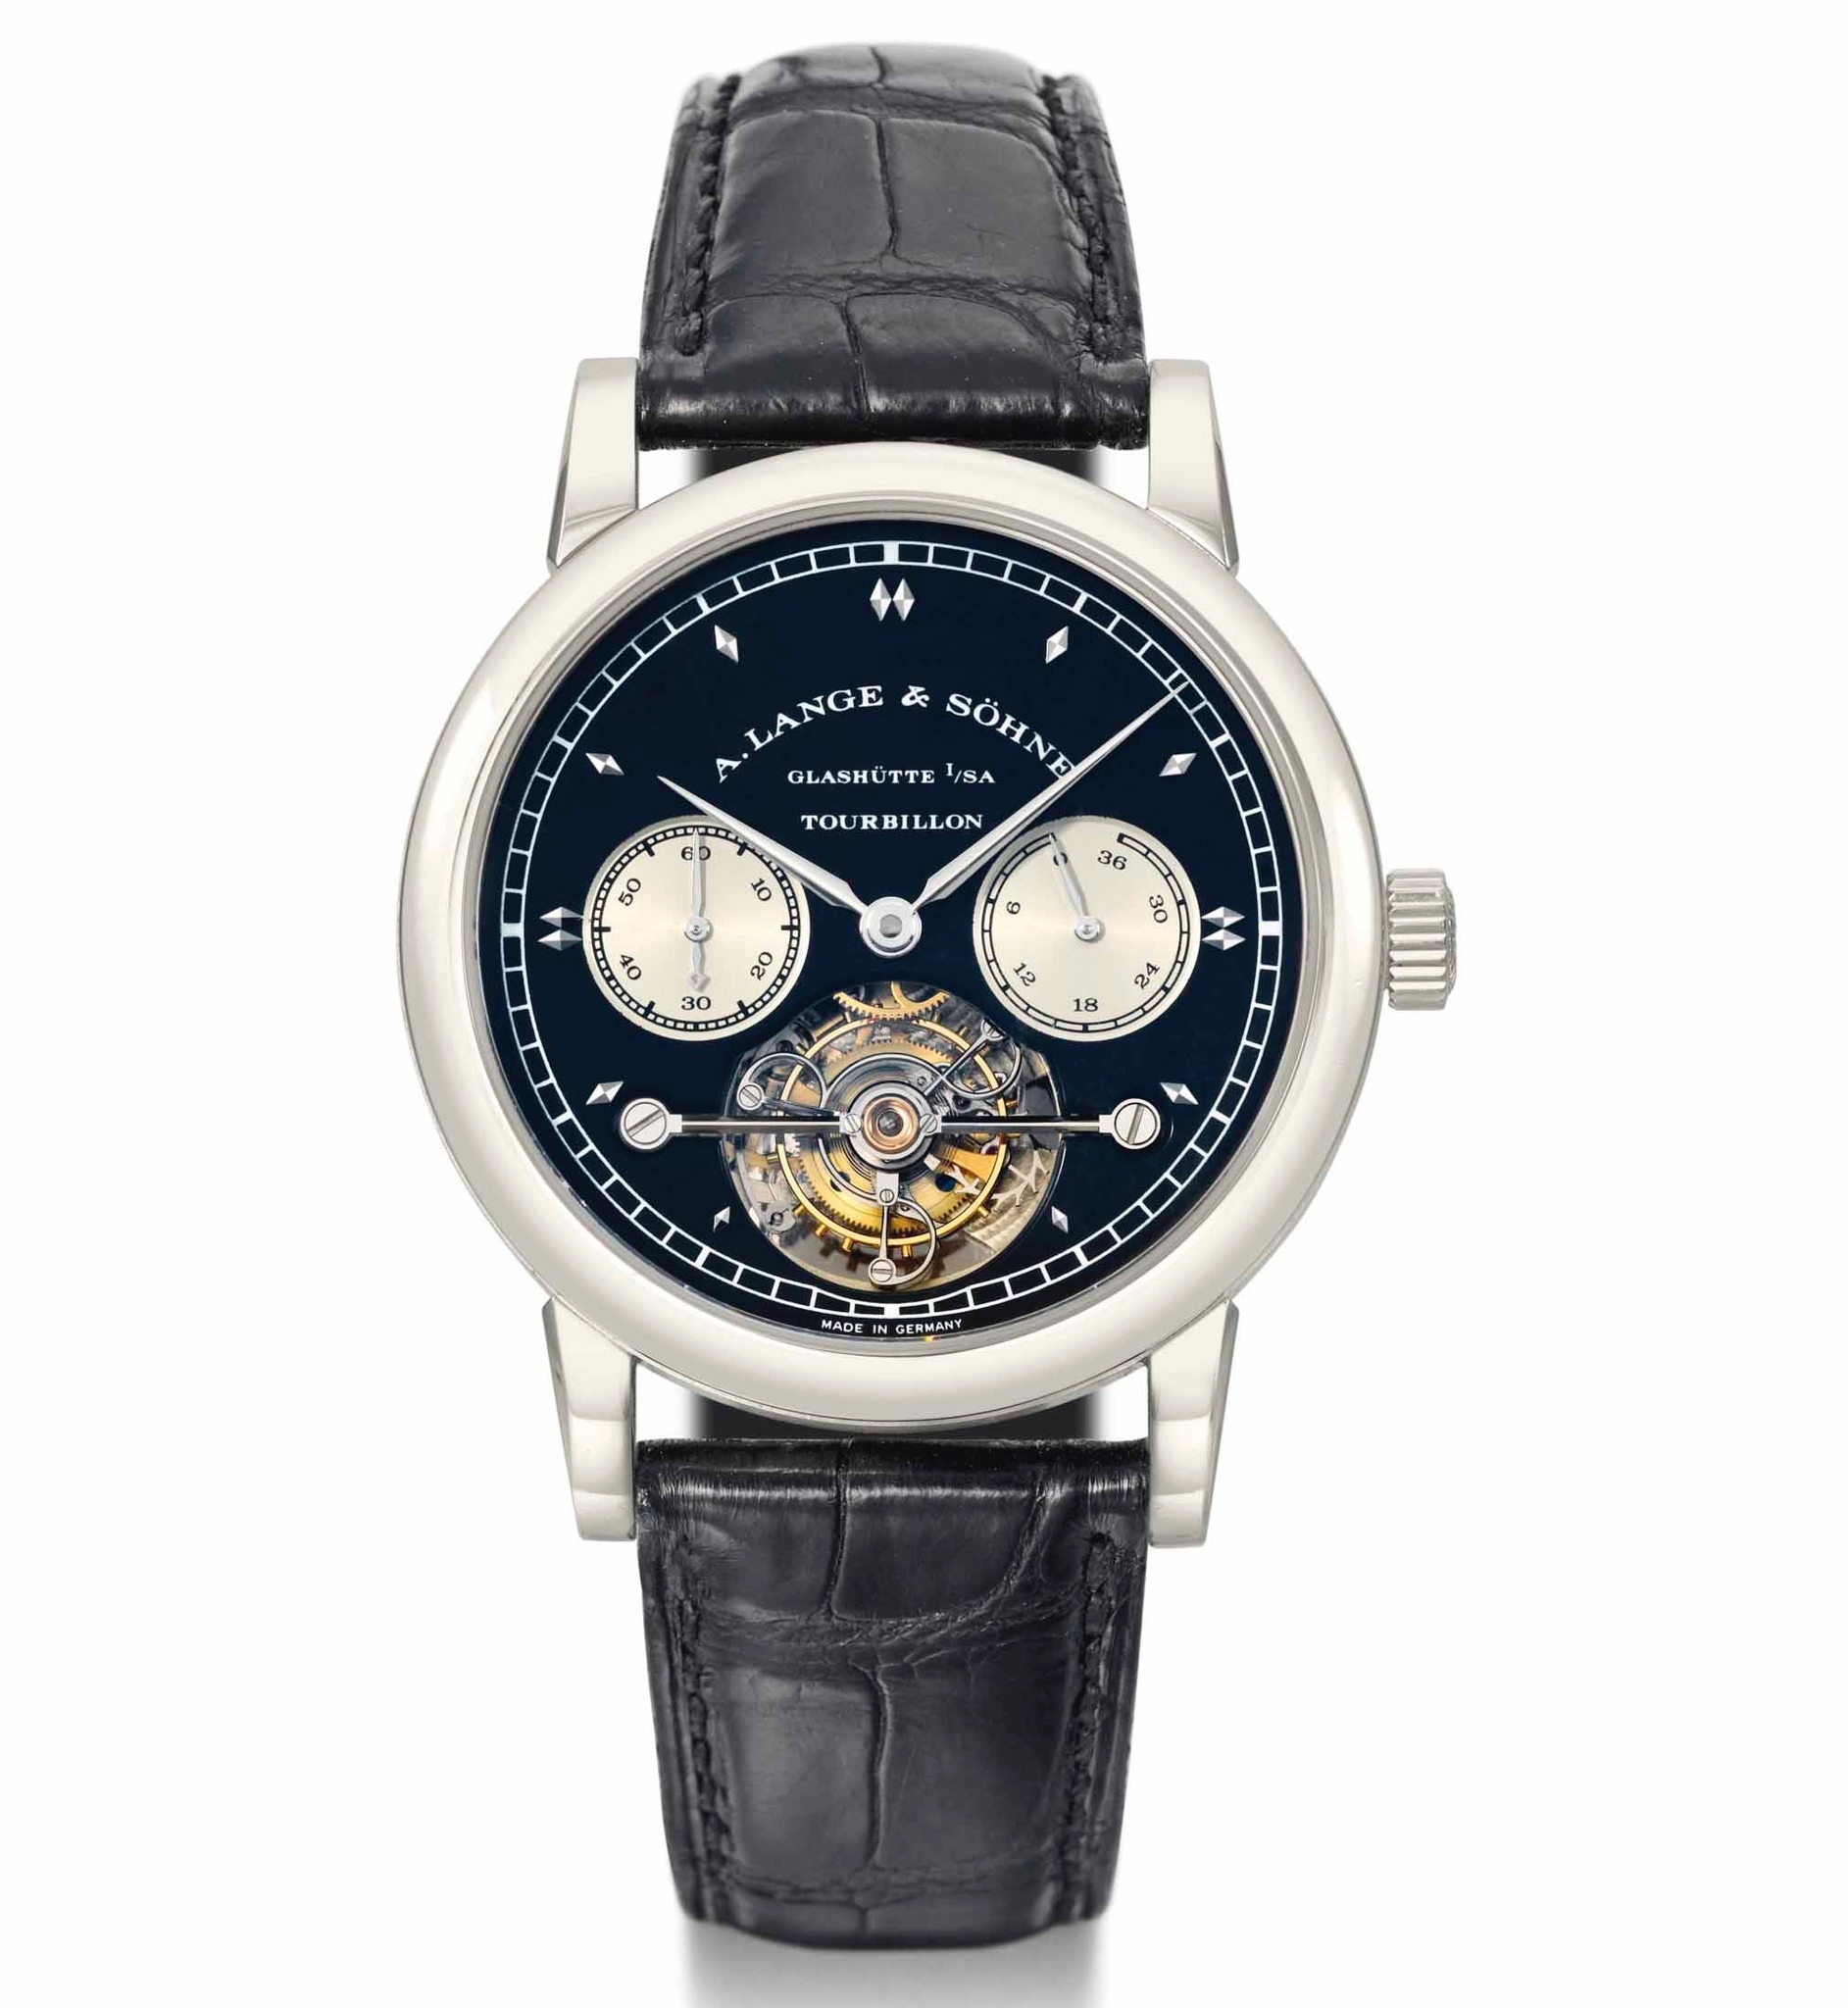 Chiếc đồng hồ đeo tay A. Lange & Söhne tourbillon điểm chuông bằng vàng trắng cực kỳ tinh xảo và độc đáo với cơ chế chain fusee, được sản xuất năm 1998. Chiếc đồng hồ này được bán với giá 437.000 CHF vào ngày 12 tháng 5 năm 2014 bởi đơn vị Christie's ở Geneva